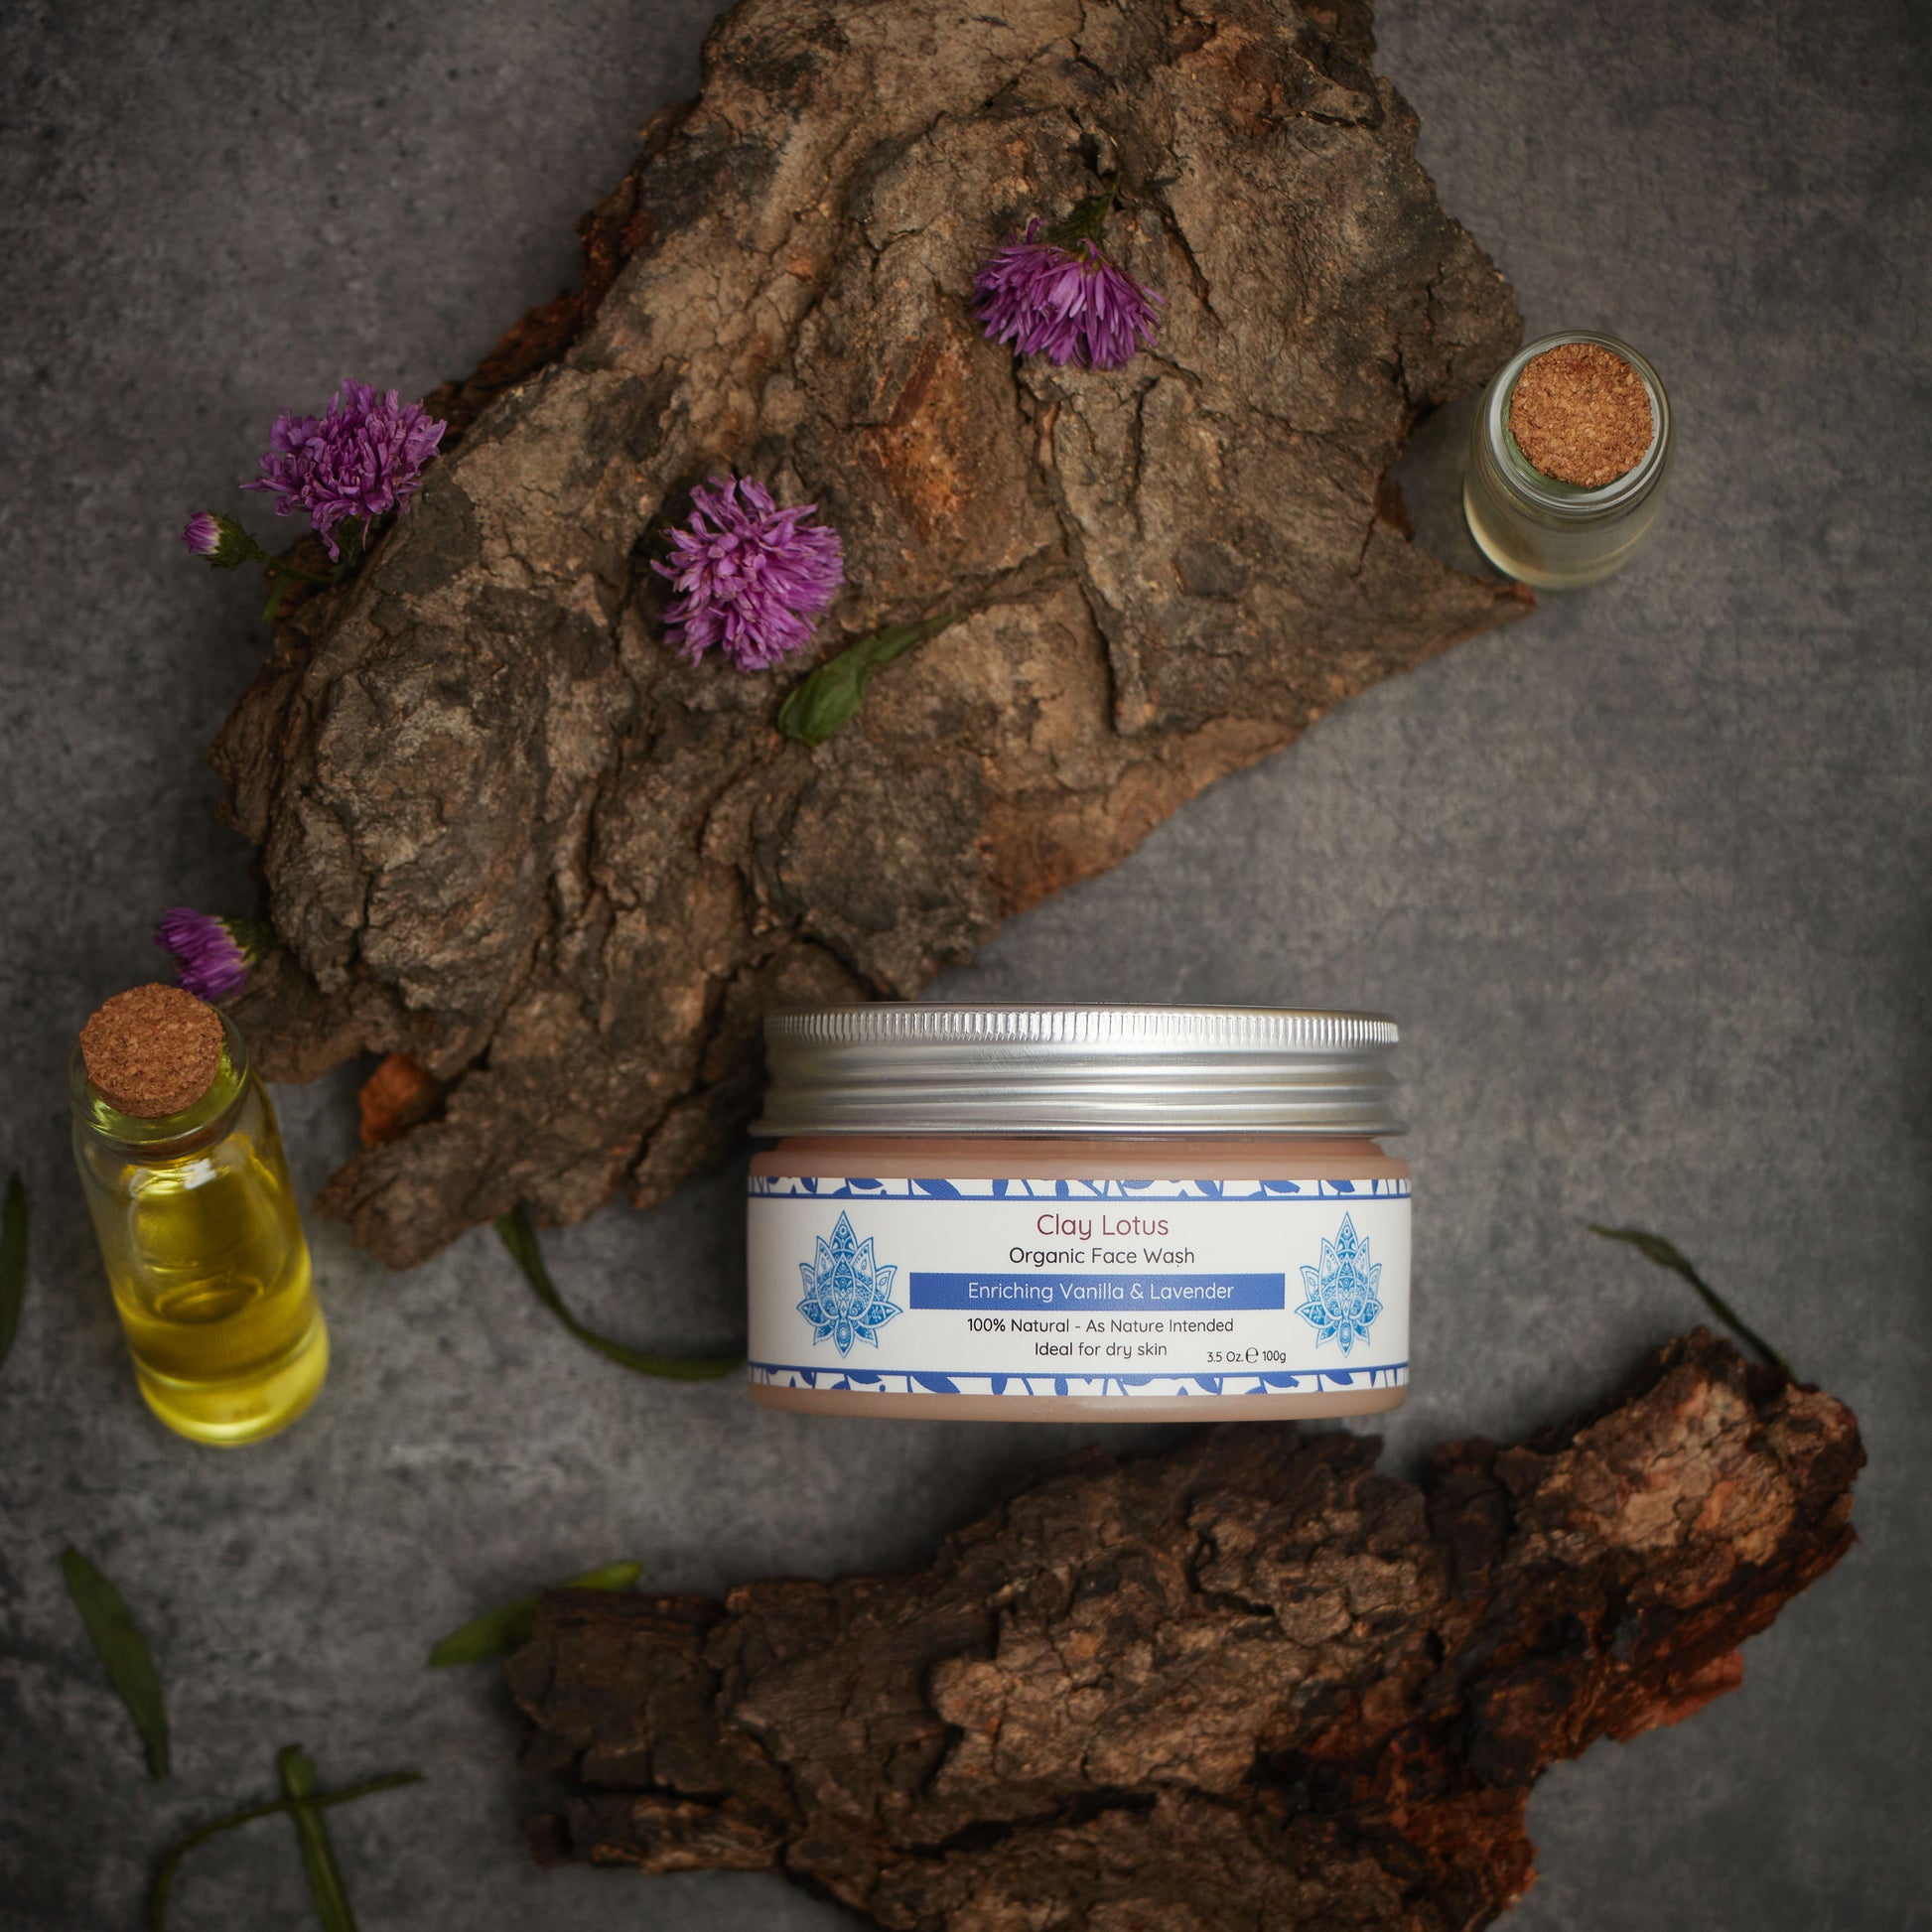 Organic Face Wash for Dry Skin: Enriching Vanilla & Lavender